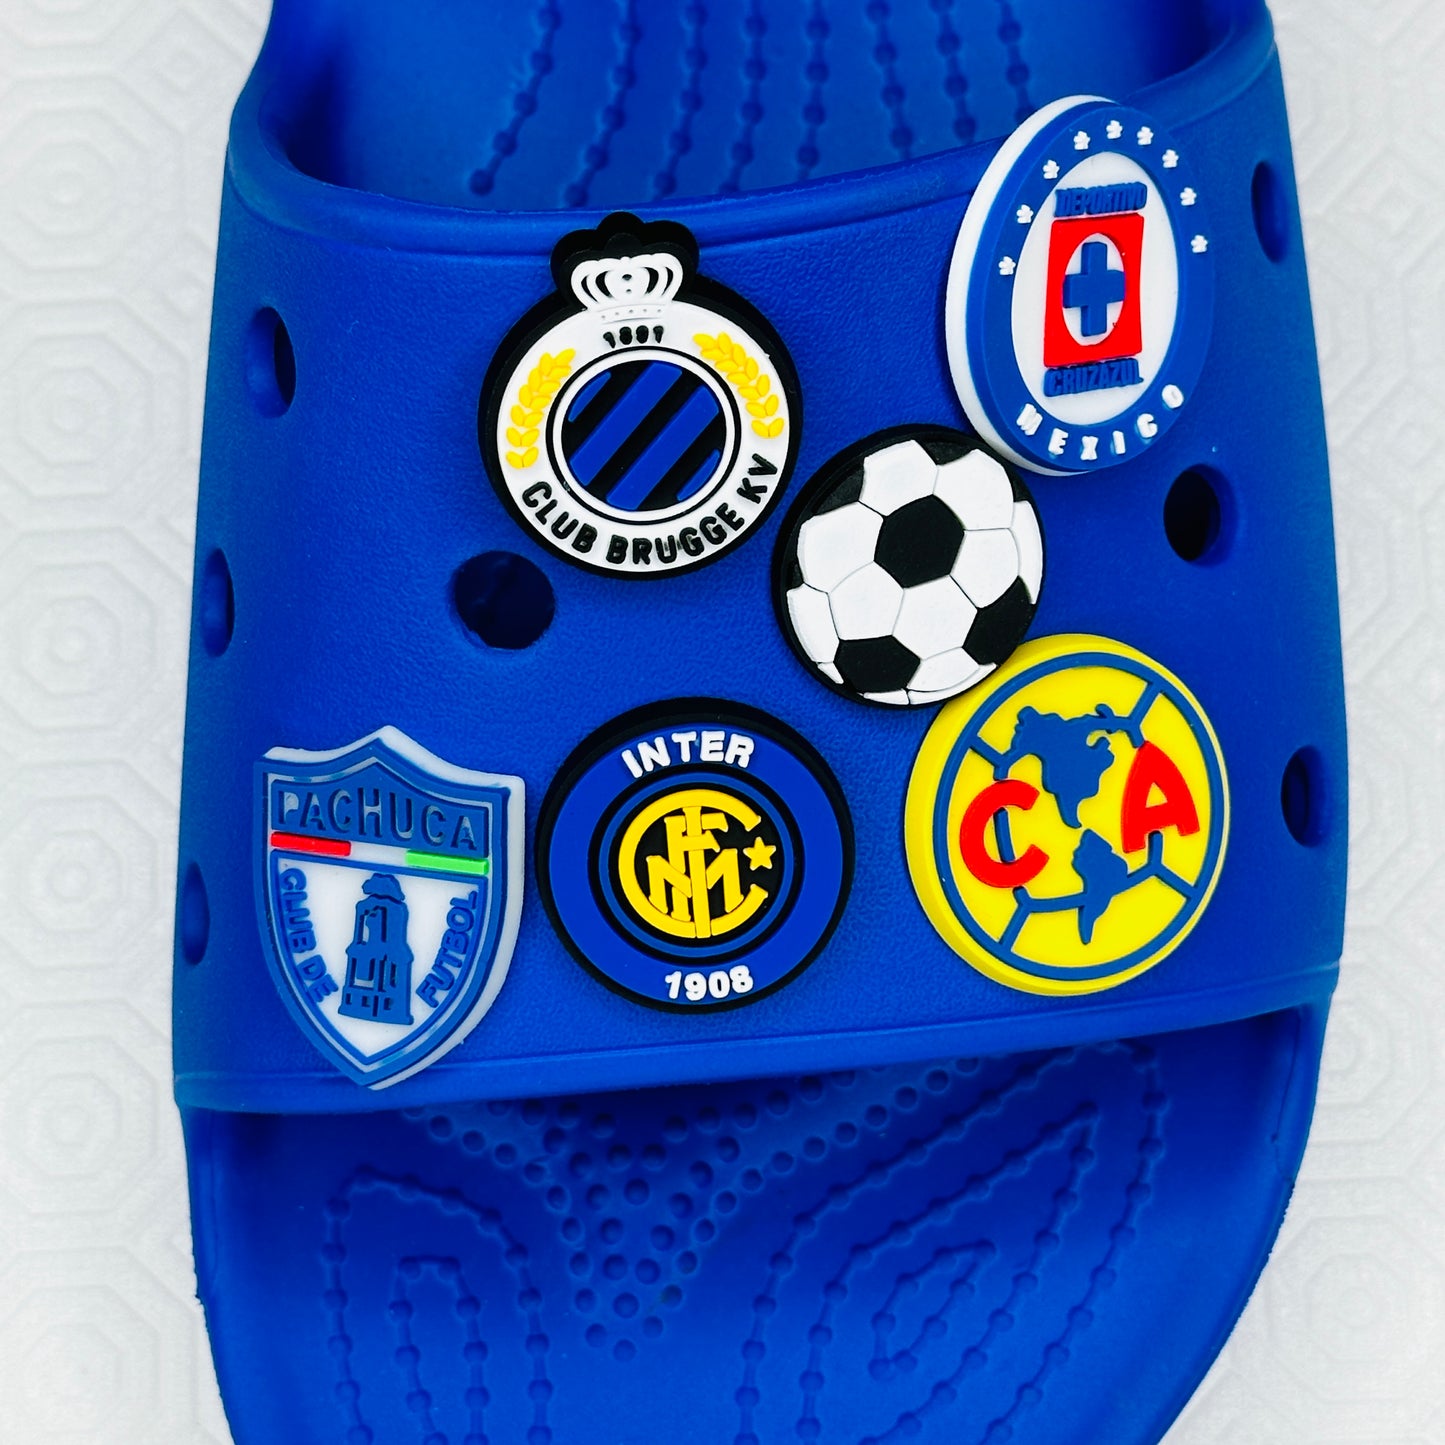 Football Soccer Croc Charm